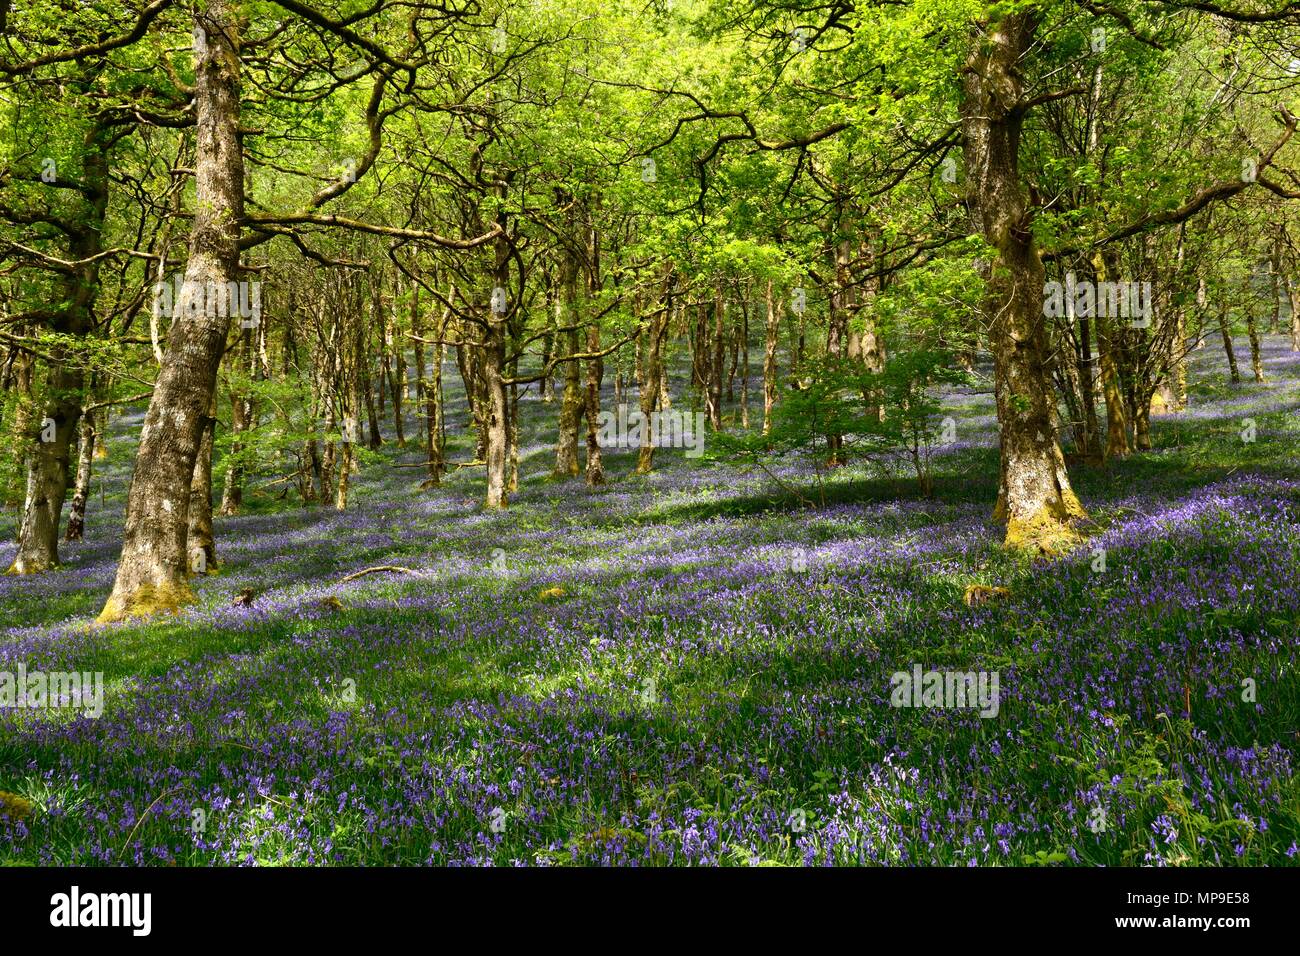 Soleil pommelé sur les bluebells Hyacinthoides non scripta Gwenffrwd Dinas réserve RSPB Rhandirmwyn Cambrian Mountains Wales Cymru UK Banque D'Images